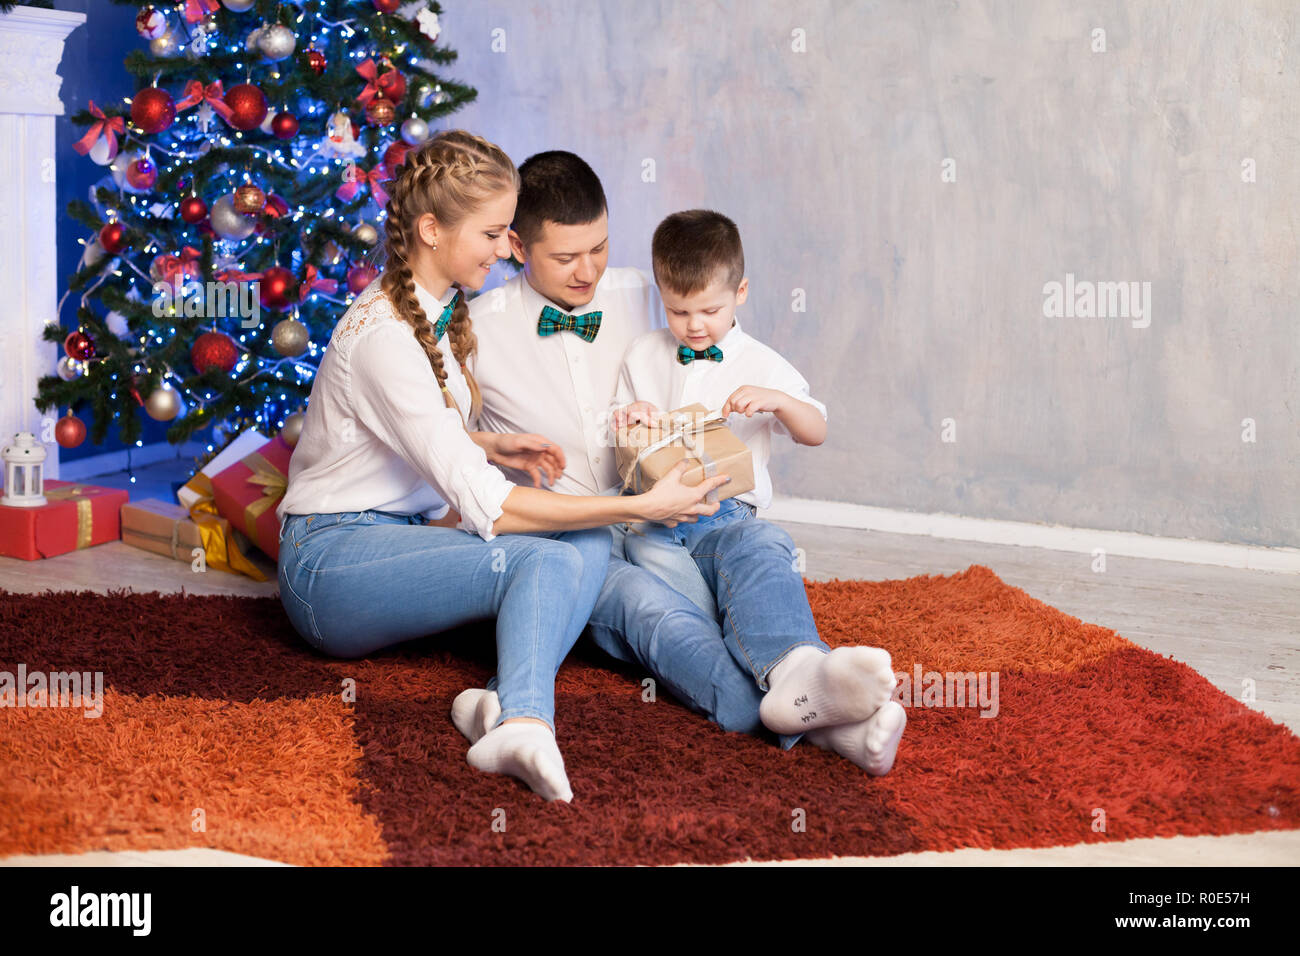 Regali Di Natale Papa.Mamma E Papa Di Un Ragazzino Aprire I Regali Di Natale Per Il Nuovo Anno Foto Stock Alamy